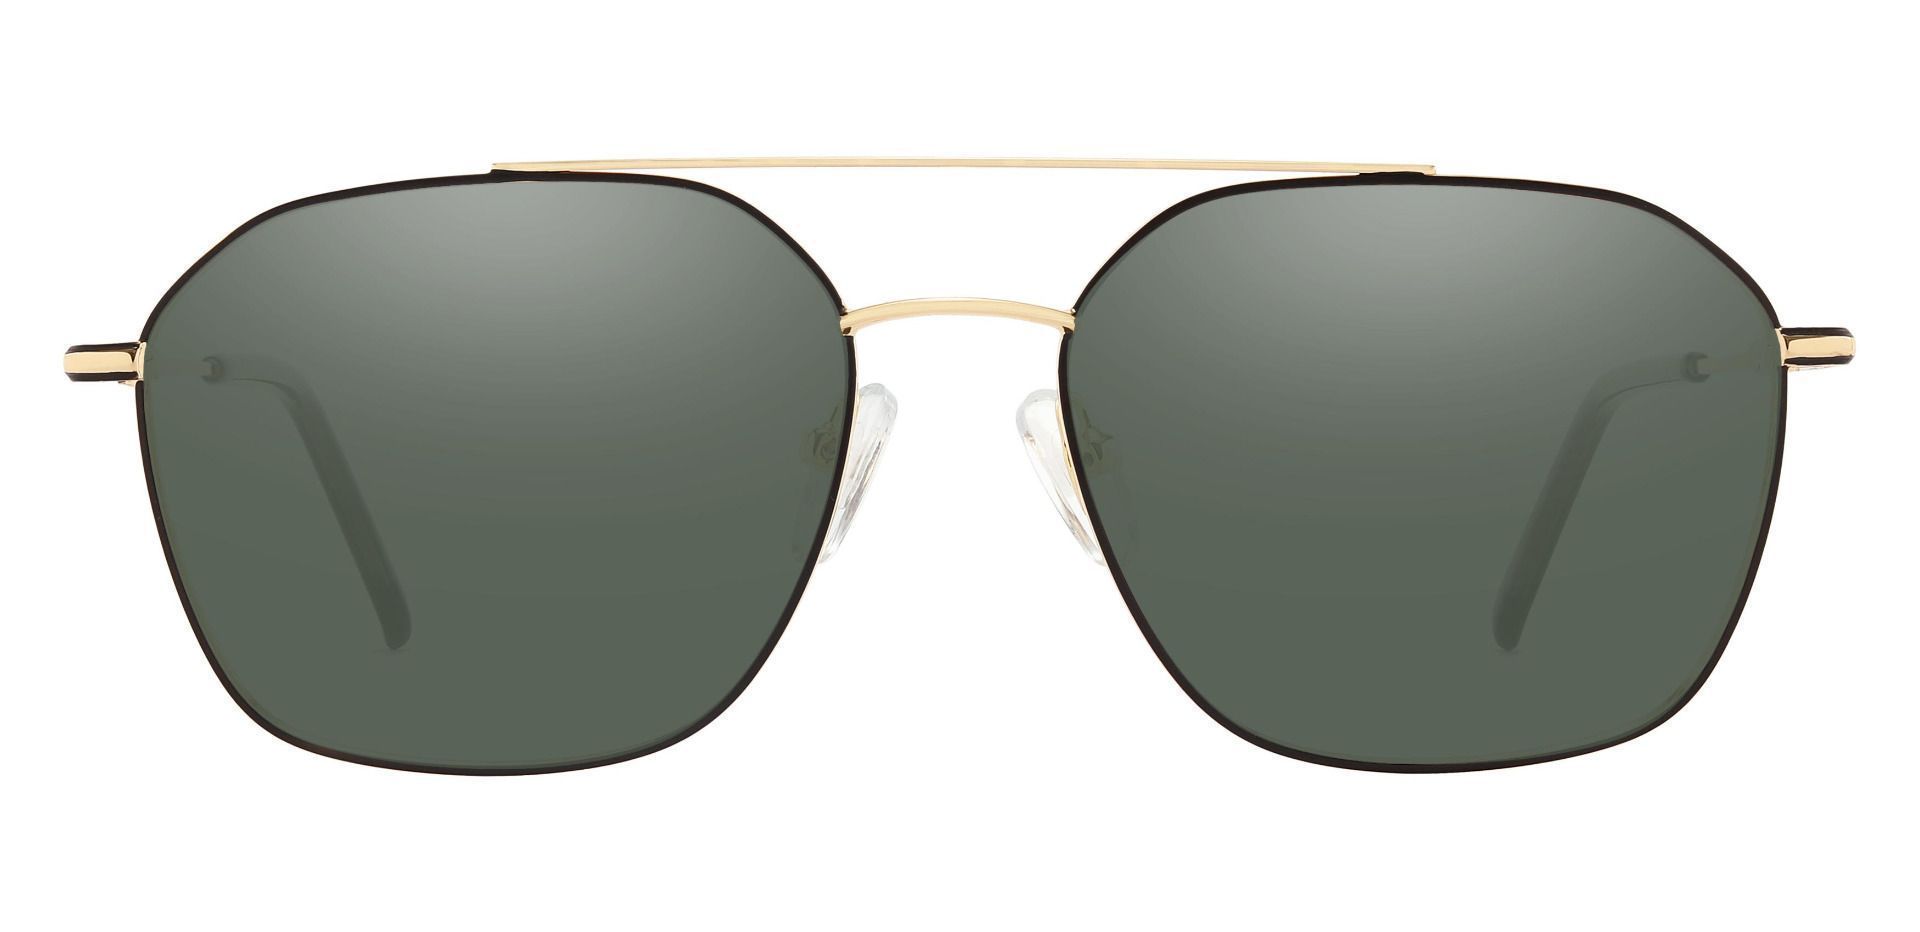 Harvey Aviator Reading Sunglasses - Gold Frame With Green Lenses